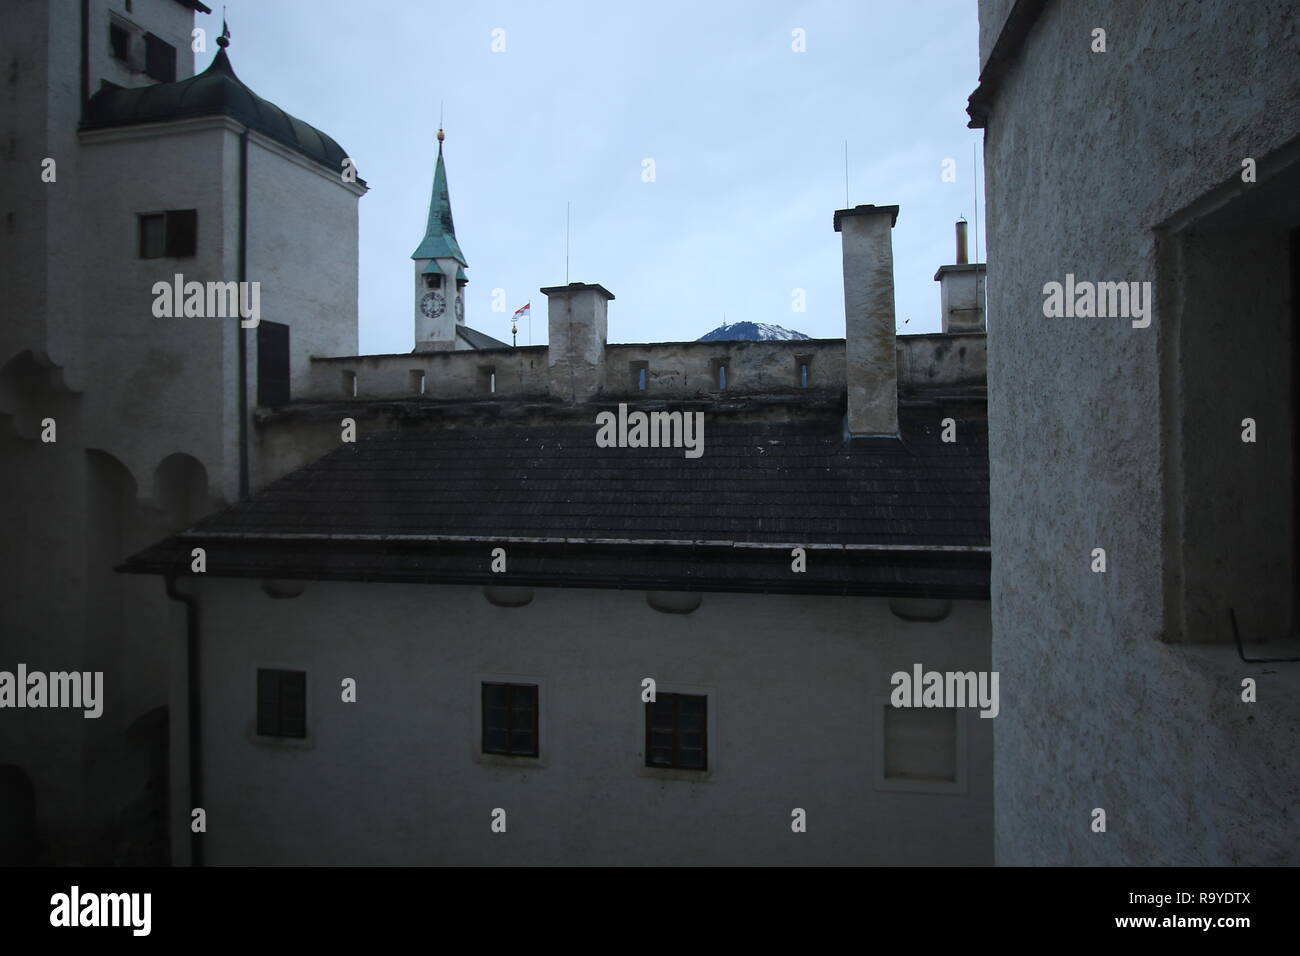 Salzburg an der Salzach. Altstadt mit Gebäuden aus dem Mittelalter und Barock. Hier ist der Geburtsort des berühmten Komponisten Mozart Stockfoto